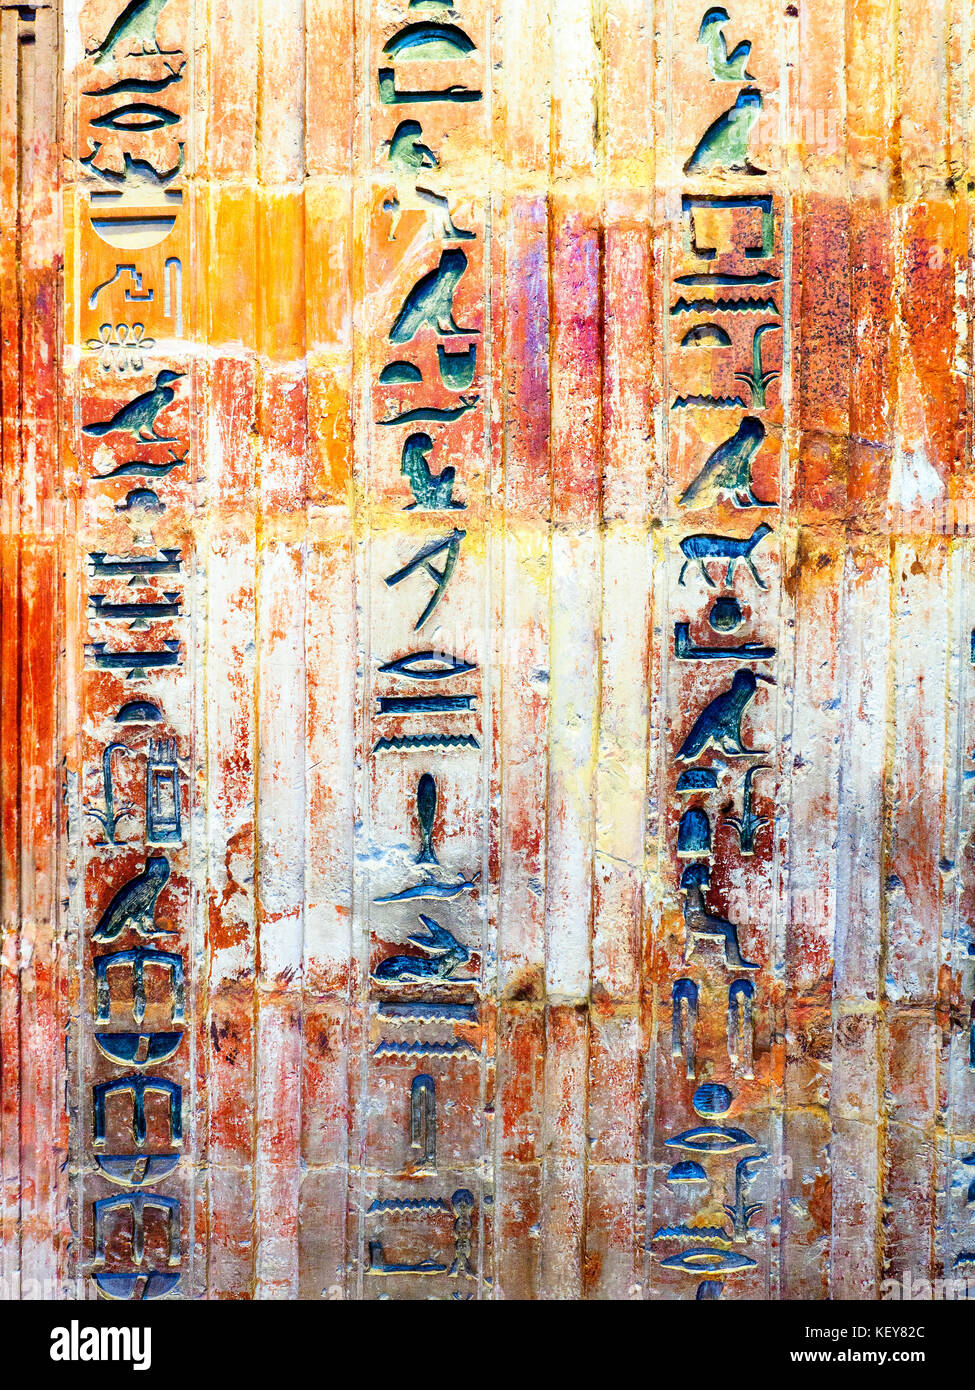 Dettaglio della falsa porta e architrave di ptahshepses British museum - Londra, Inghilterra Foto Stock